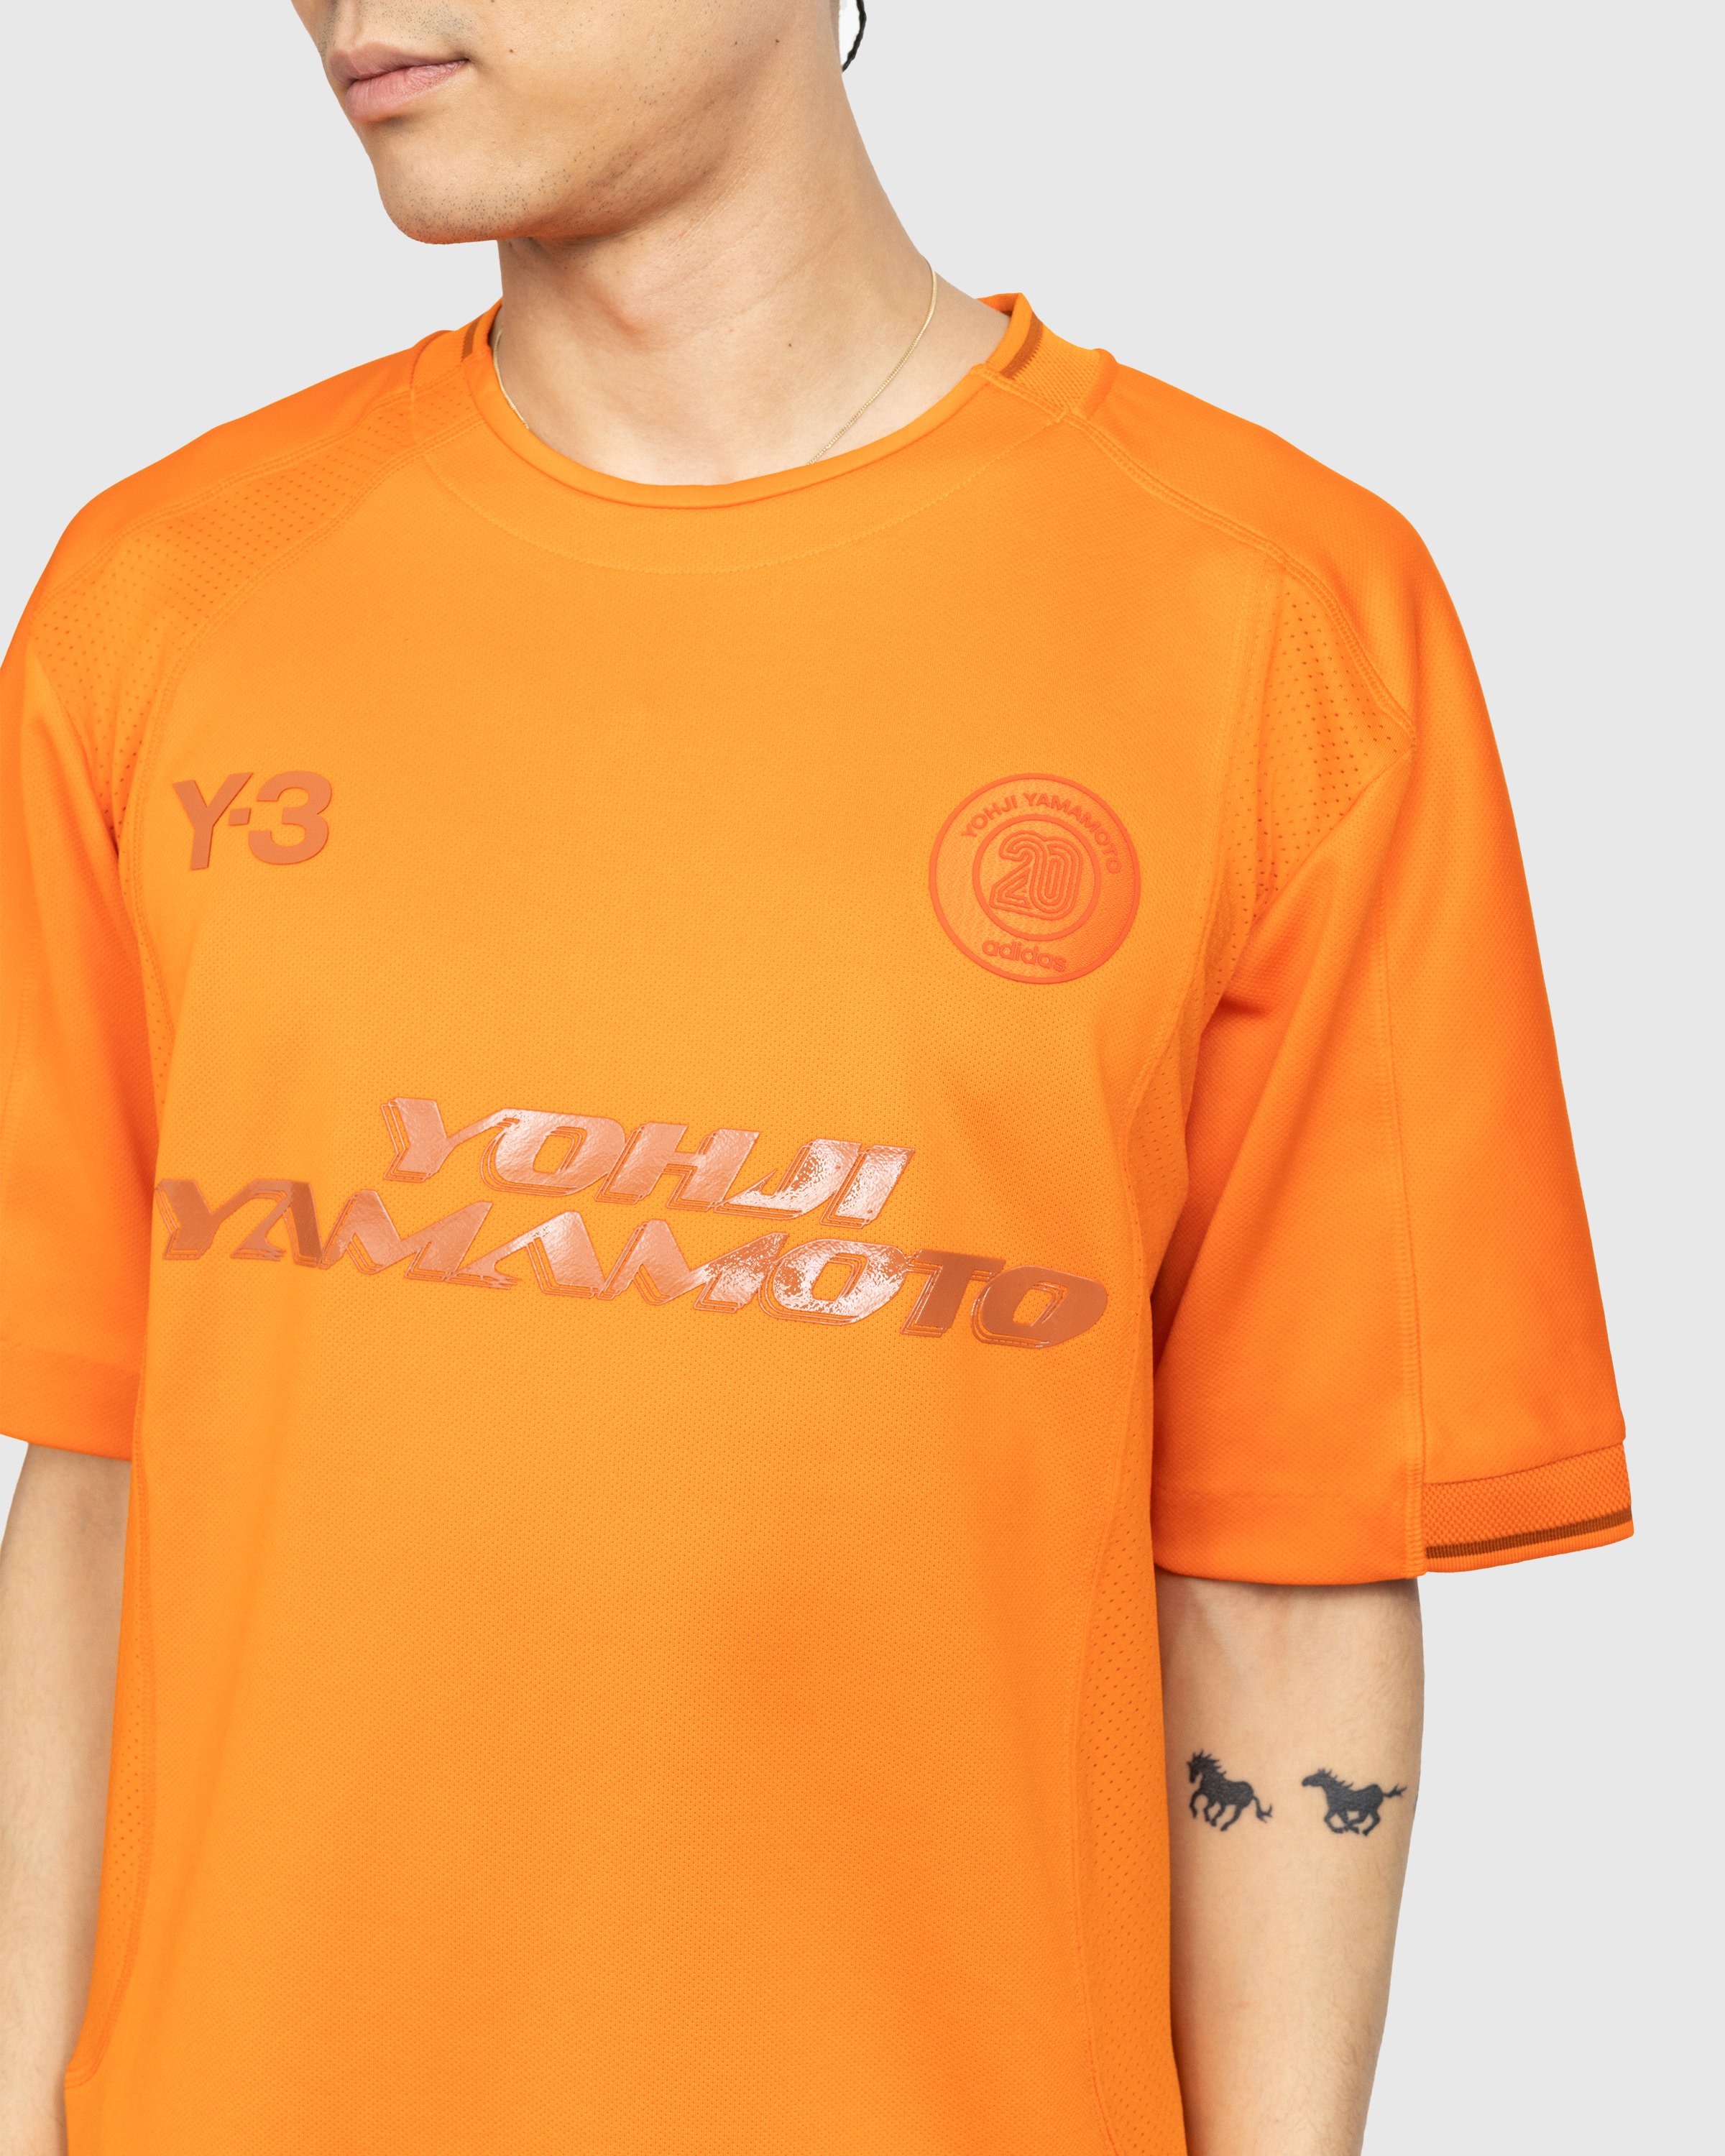 Y-3 - Logo T-Shirt - Clothing - Orange - Image 4